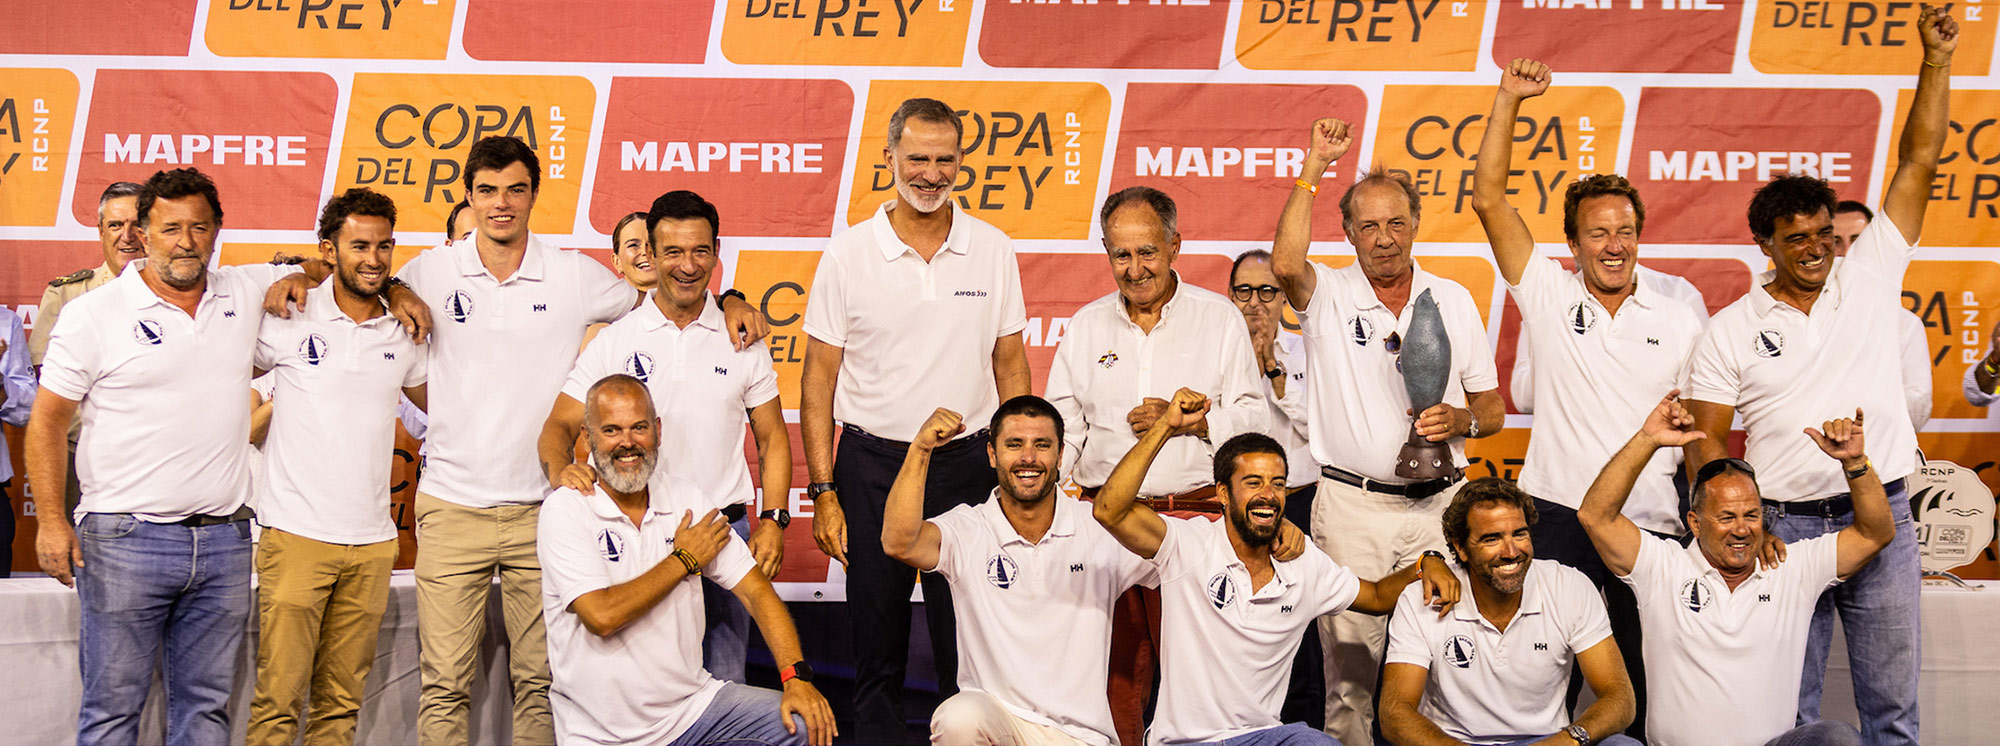 Regata Copa del Rey MAPFRE 2023 - orc1 - pbx sailing team - palibex